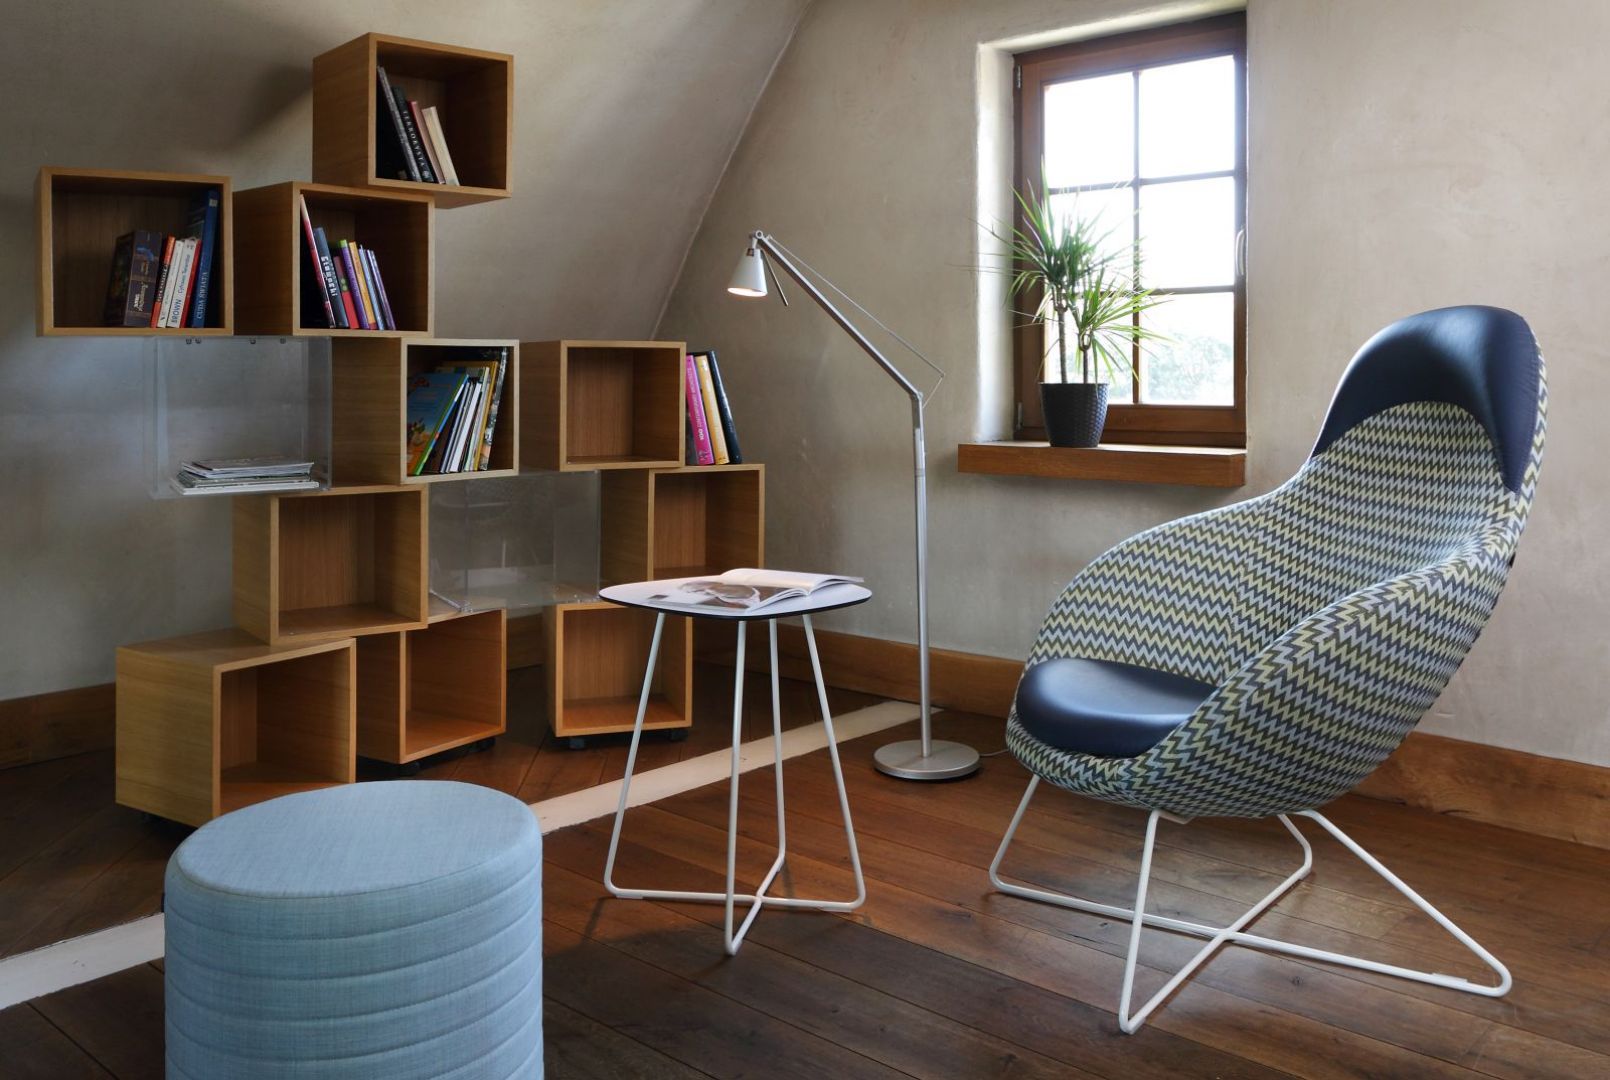 Kolekcja foteli Vieni wyróżnia się zaokrągloną formą oraz designem nawiązującym do stylu pop-art.  Fot. Bejot